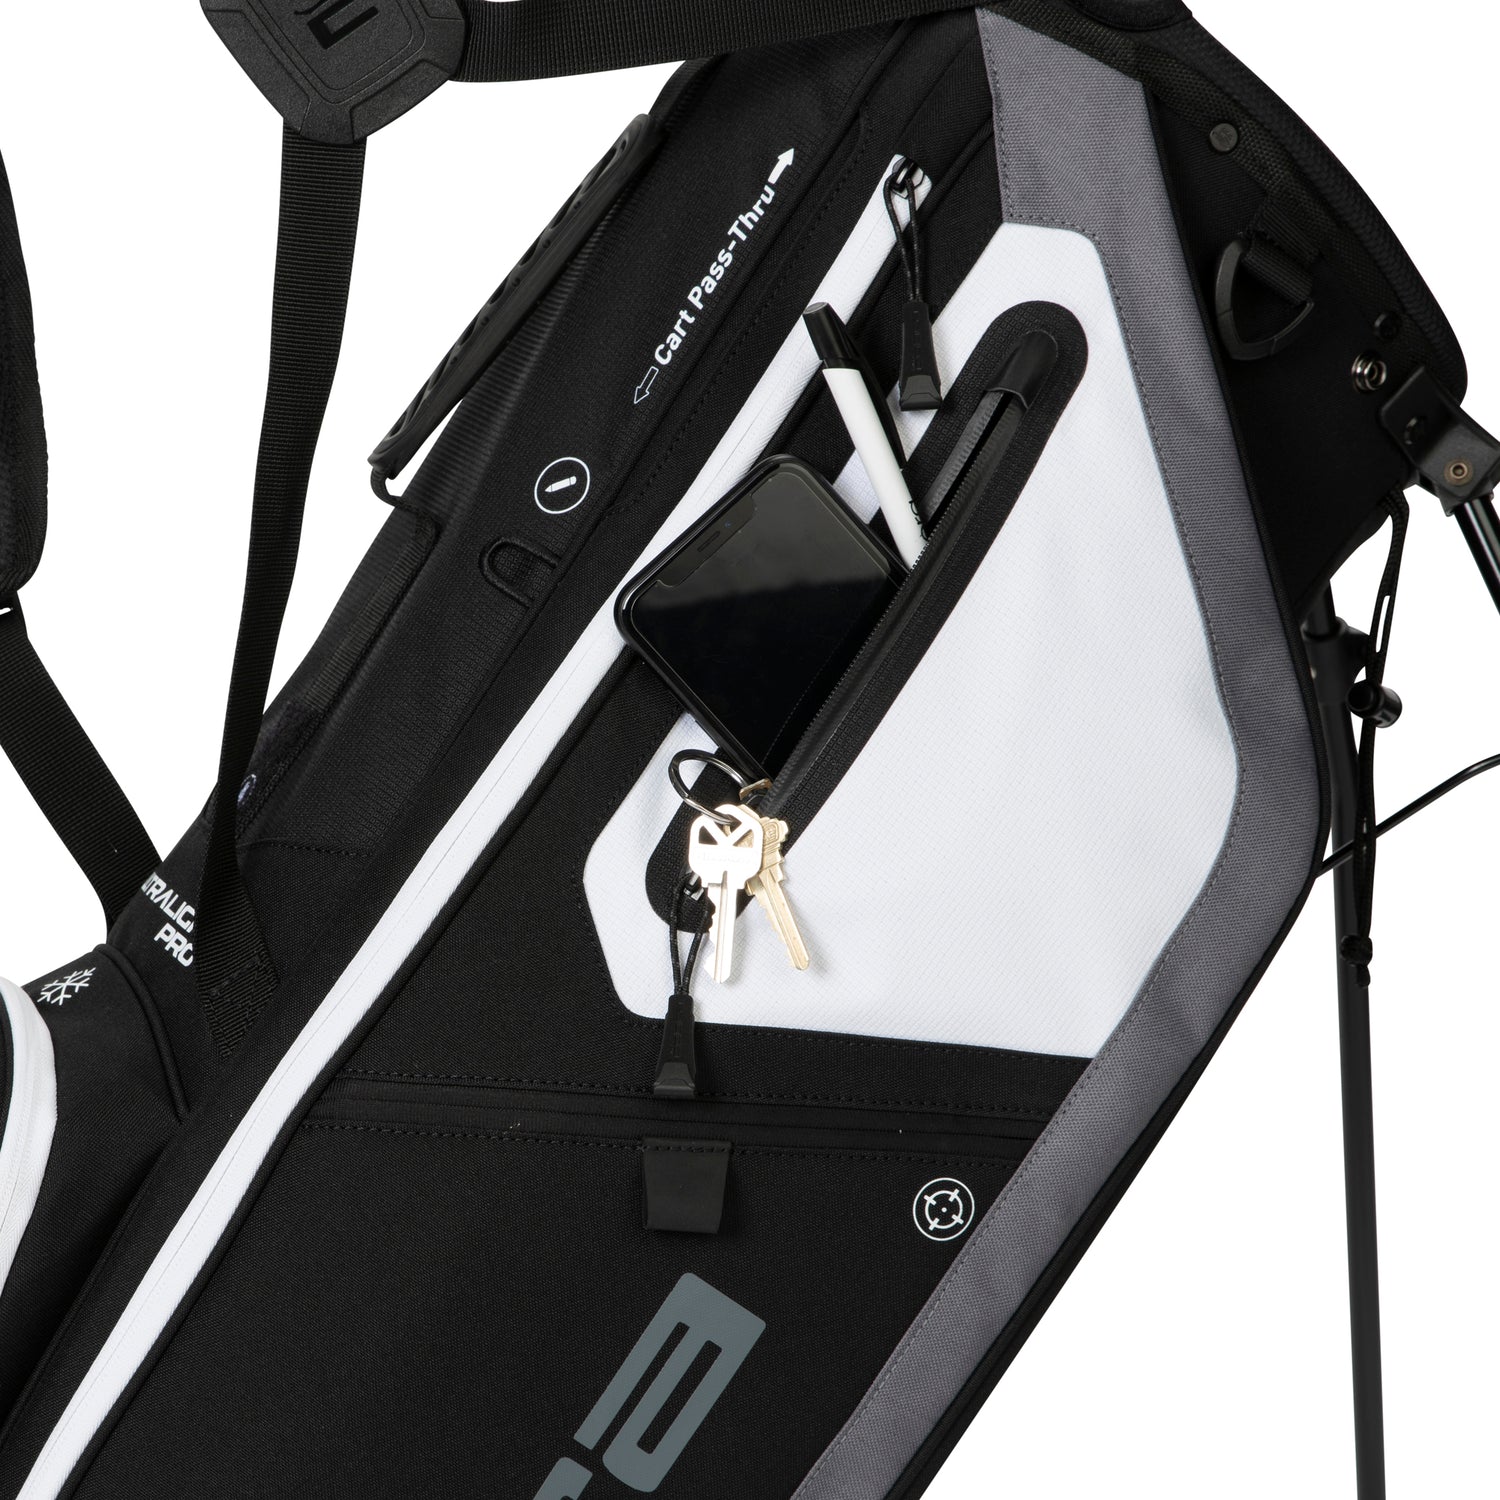 New Cobra Mercedes Benz Ultradry Pro Cart Golf Bag Black 15-Way